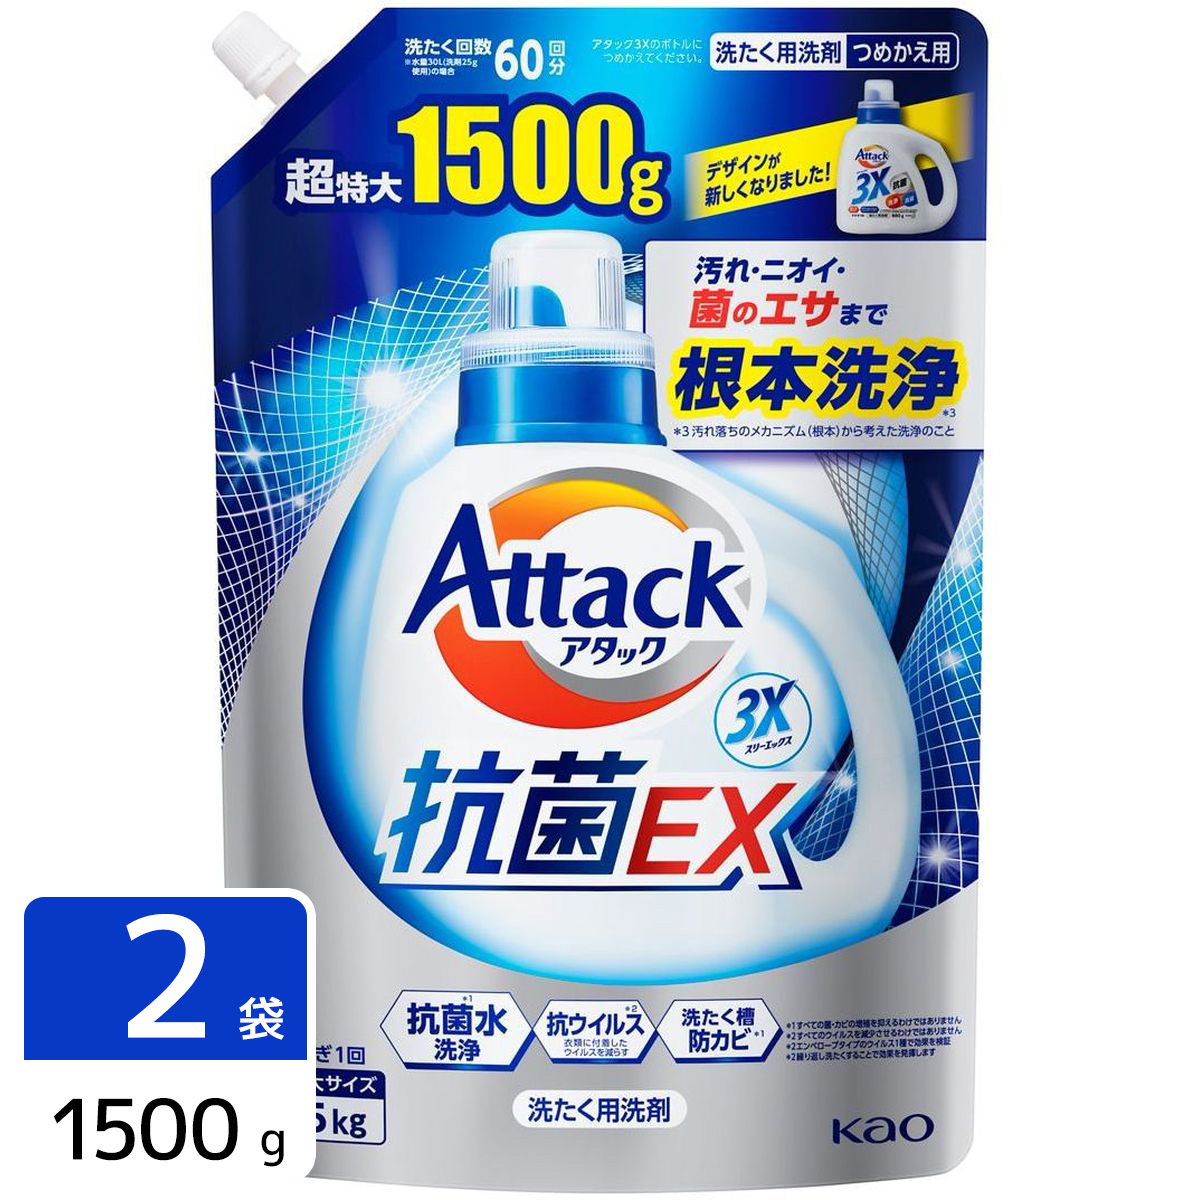 アタック 抗菌EX 洗濯洗剤 詰め替え 超特大 1500g 2袋セット